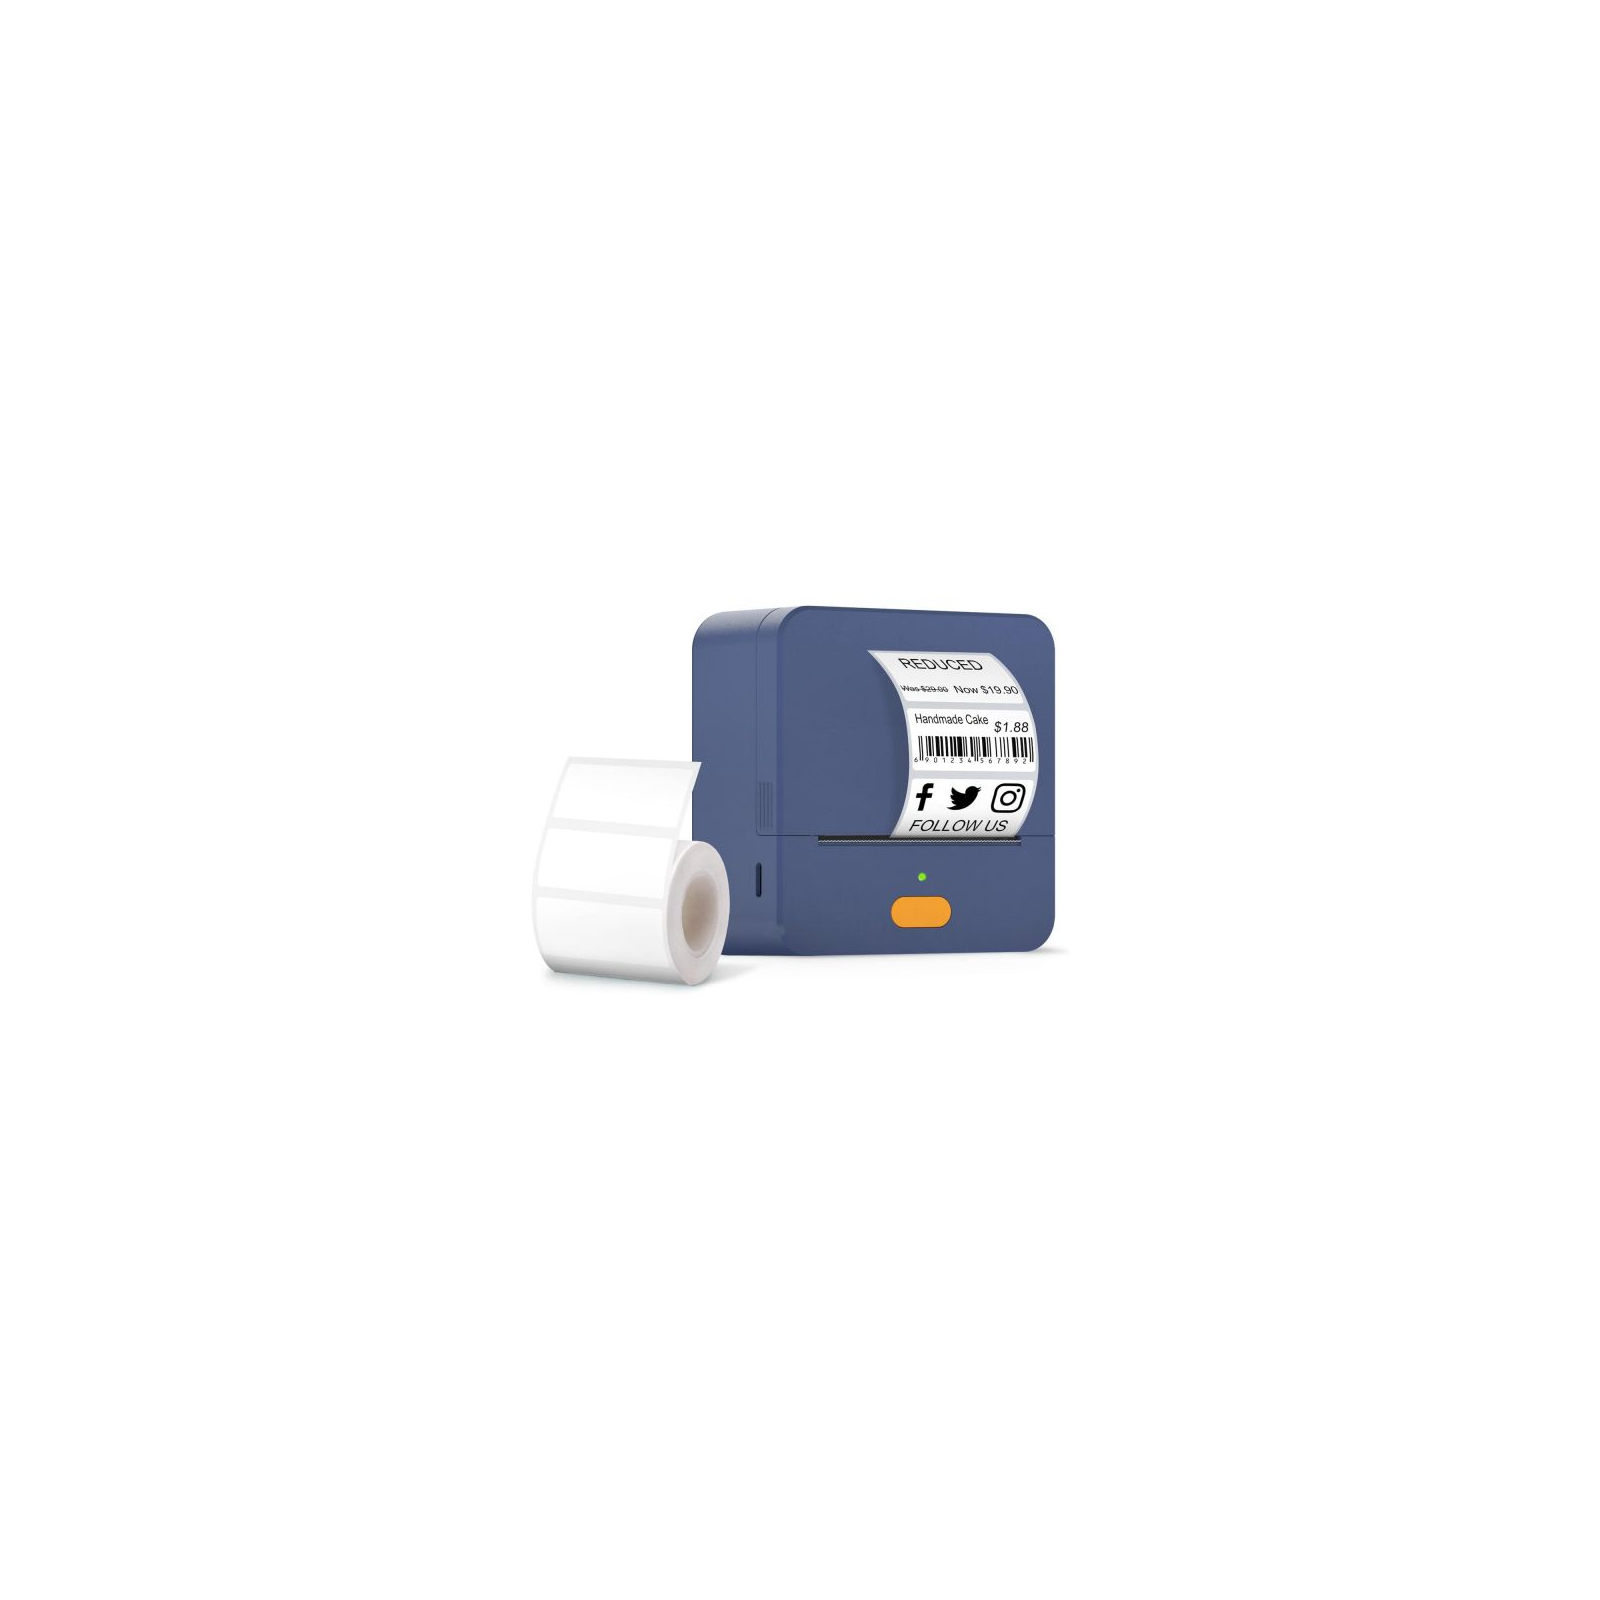 Принтер этикеток UKRMARK UP1BL bluetooth, USB, синий (00773)